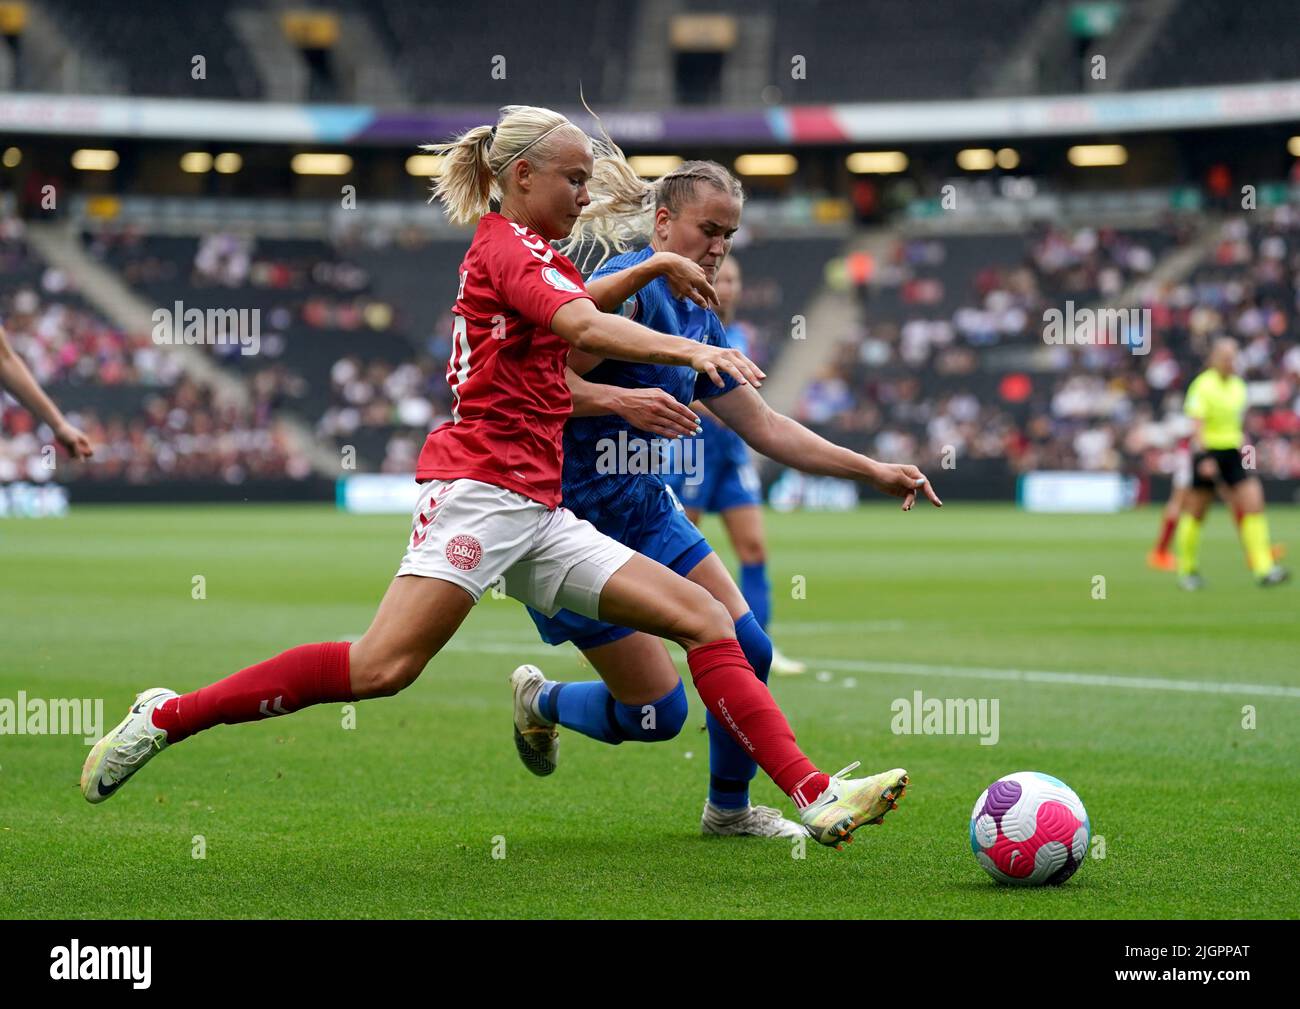 Die Finnin Elli Pikkujamsa kämpft während des UEFA Women's Euro 2022 Gruppe B-Spiels im Stadium MK, Milton Keynes, gegen die dänische Pernille Harder. Bilddatum: Dienstag, 12. Juli 2022. Stockfoto